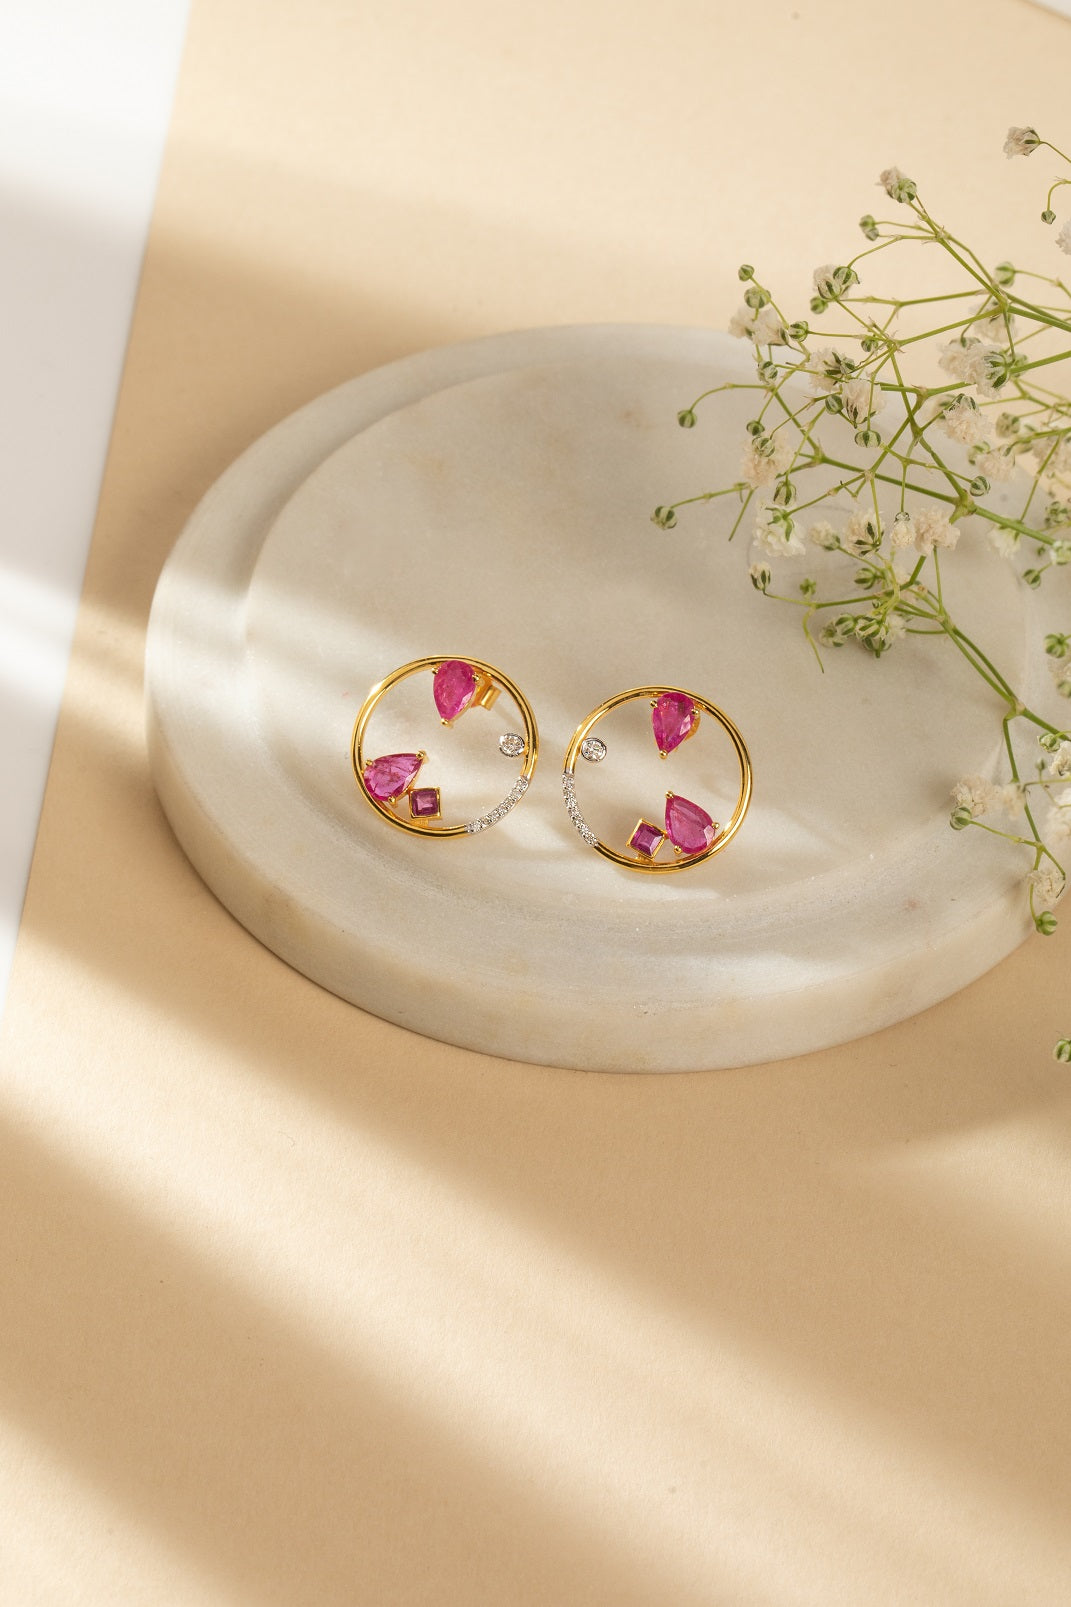 Abstract Ruby Gemstone Stud Earrings